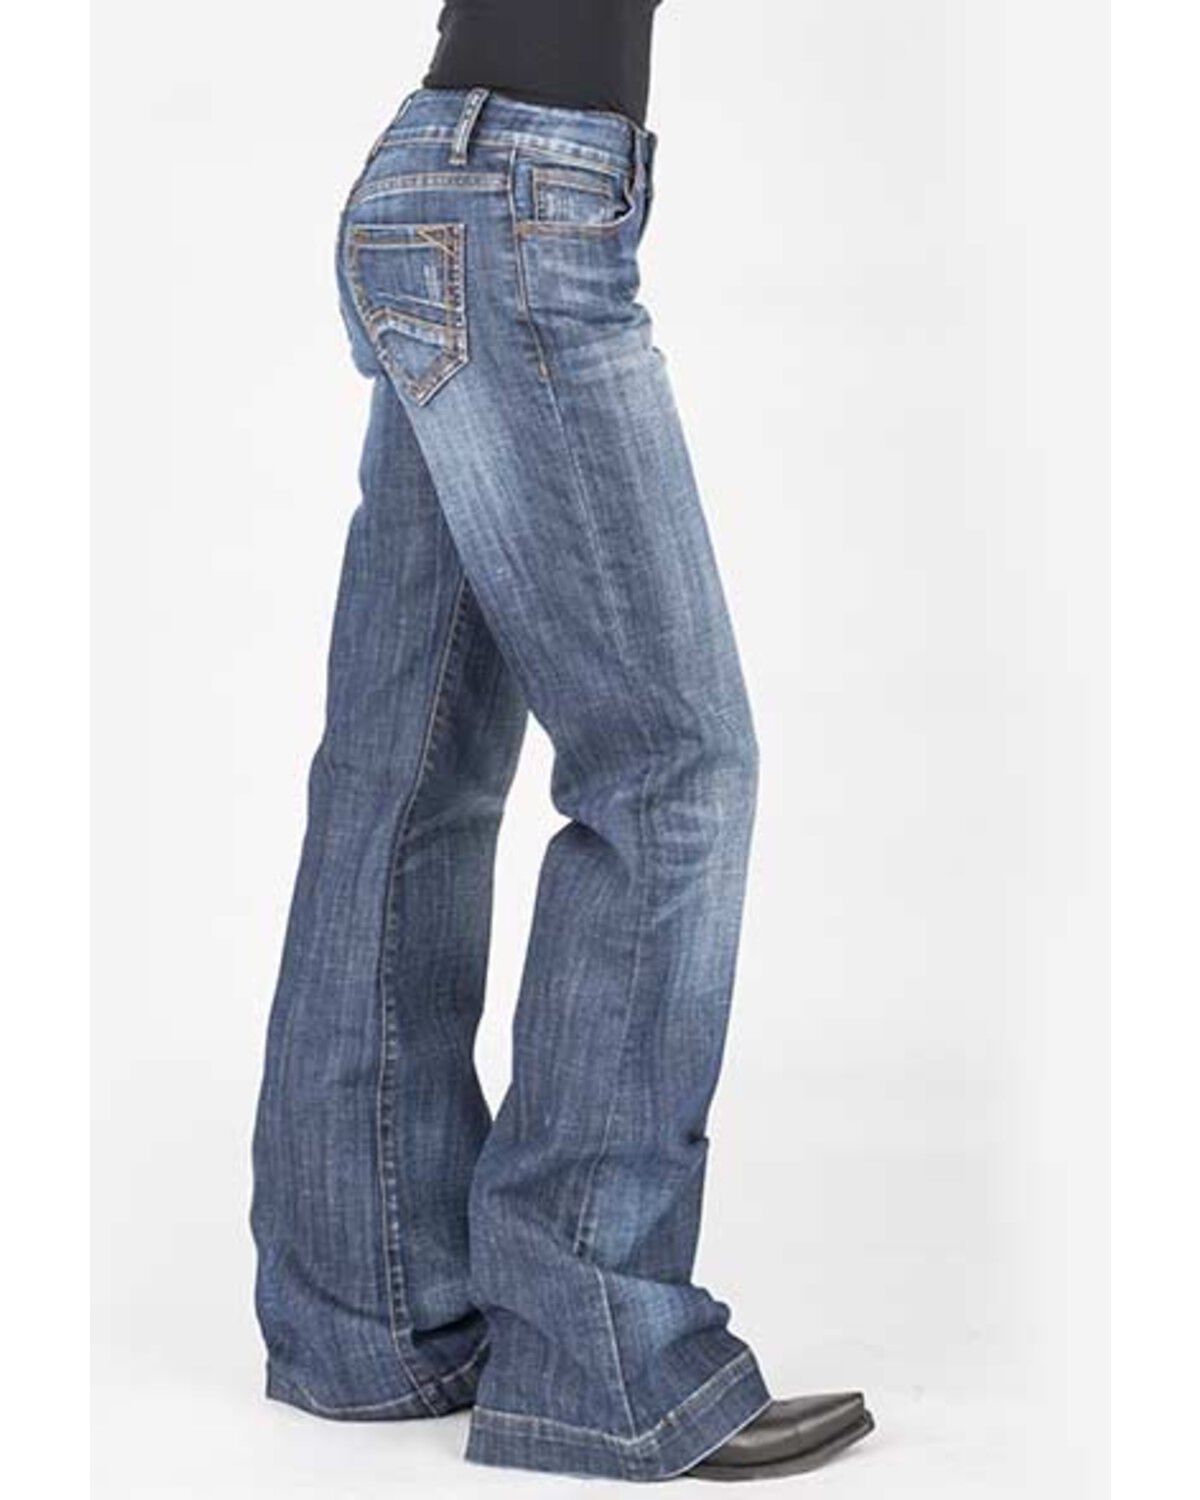 stetson blue jeans